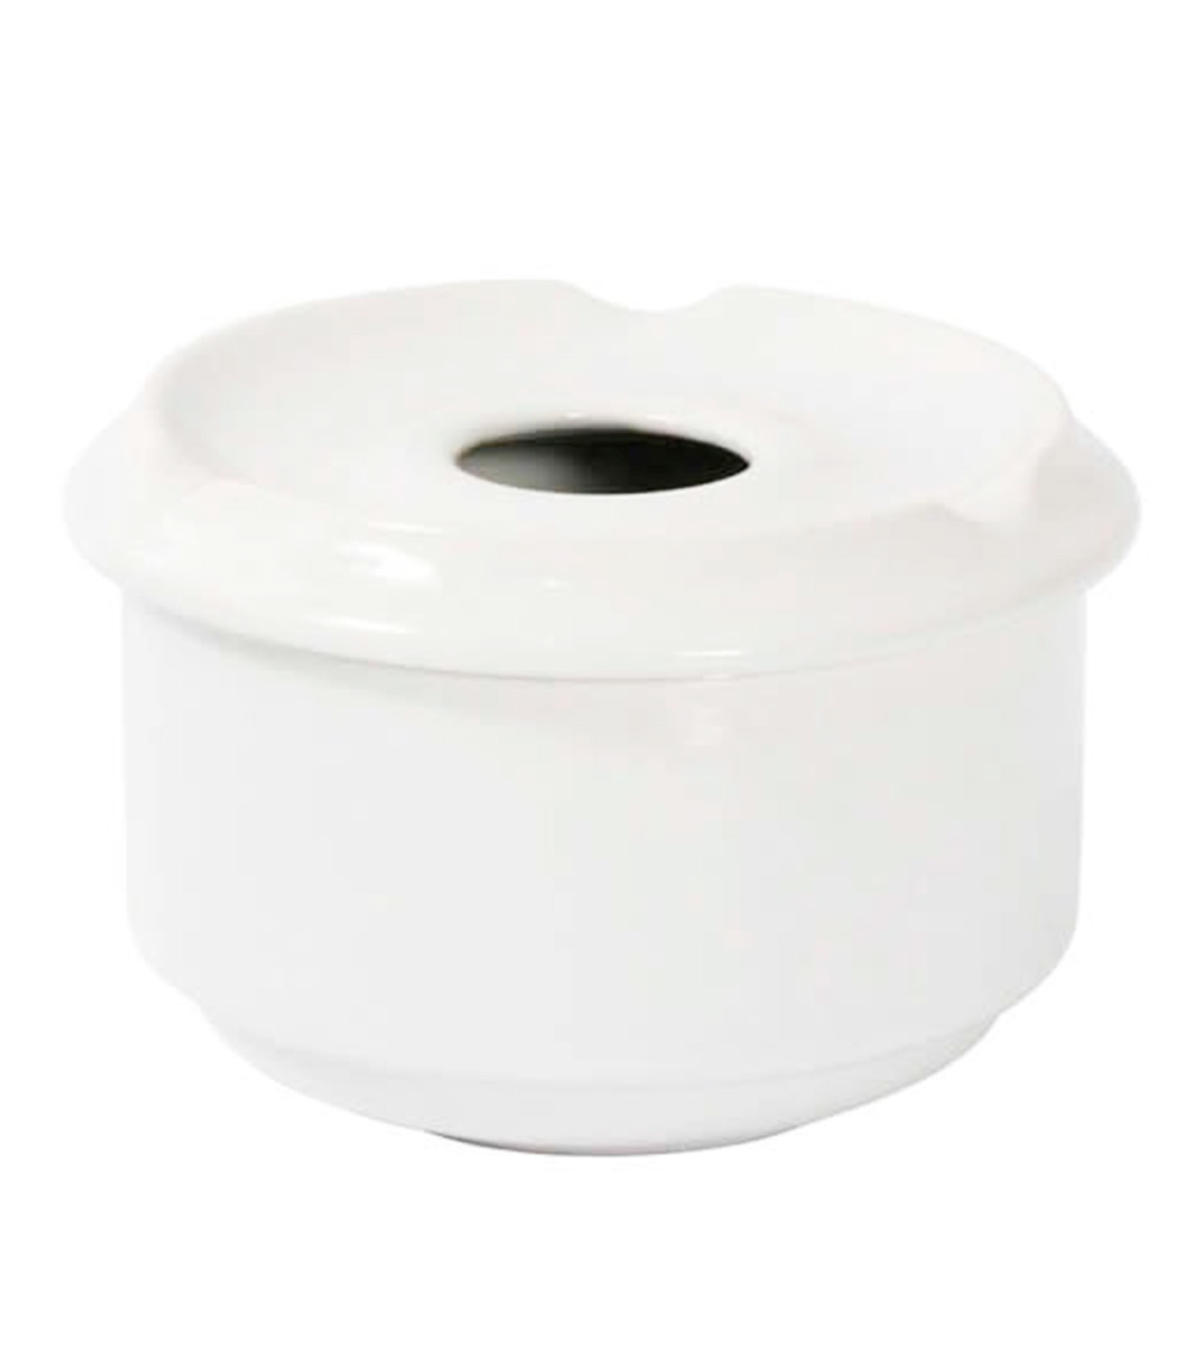 Tradineur - Cenicero redondo blanco de cerámica 9 x 6 cm, cuenco,  recipiente con tapa removible y muescas para cigarros, uso int